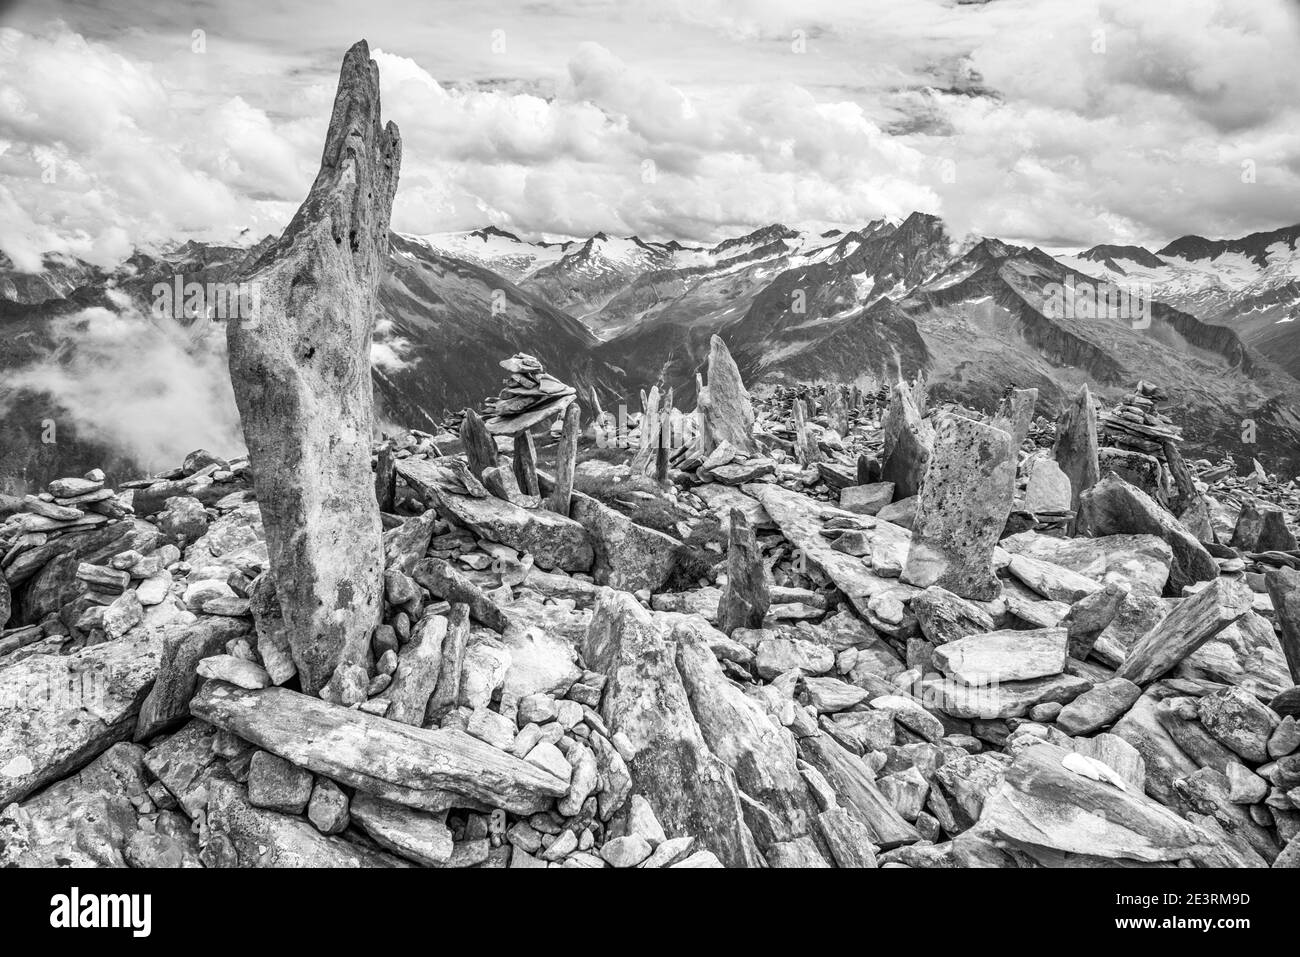 Immagini drammatiche di montagna in monocromo delle montagne delle Alpi Zillertal nel Tirolo austriaco, qui viste guardando attraverso il grande vuoto sopra Schlegeis fino all'Hochfeiler e Grosser Moseler dalla piccola vetta di Peterskopfl sopra il rifugio Friesenberberg Haus, dove ci sono molti cairns pietra costruita da muratori dilettanti di pietra. I cairns, quando sono stati costruiti per la prima volta, sono in ricordo dei molti membri ebrei del Club Alpino tedesco che sono morti durante l'Olocausto della seconda guerra mondiale. Oggi quel memoriale sembra essere perso sui visitatori al piccolo picco del ricordo che vogliono solo aggiungere Foto Stock